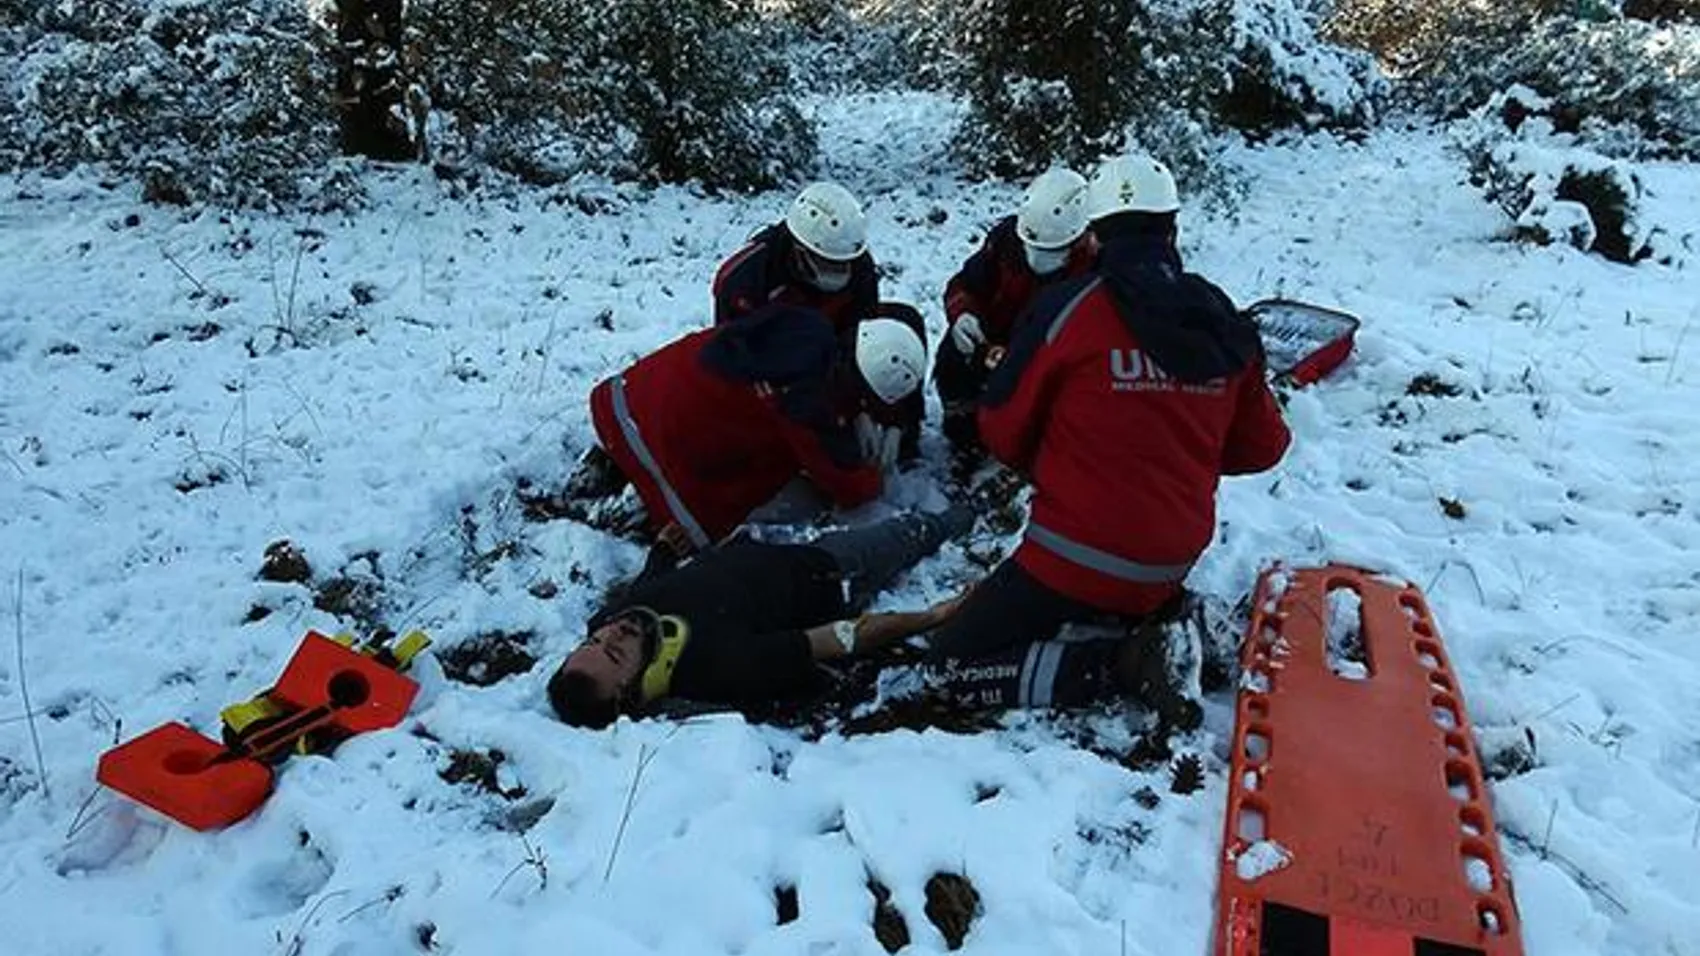 Ormanda karlı zeminde kayıp düşen üniversite öğrencisinin bacağı kırıldı